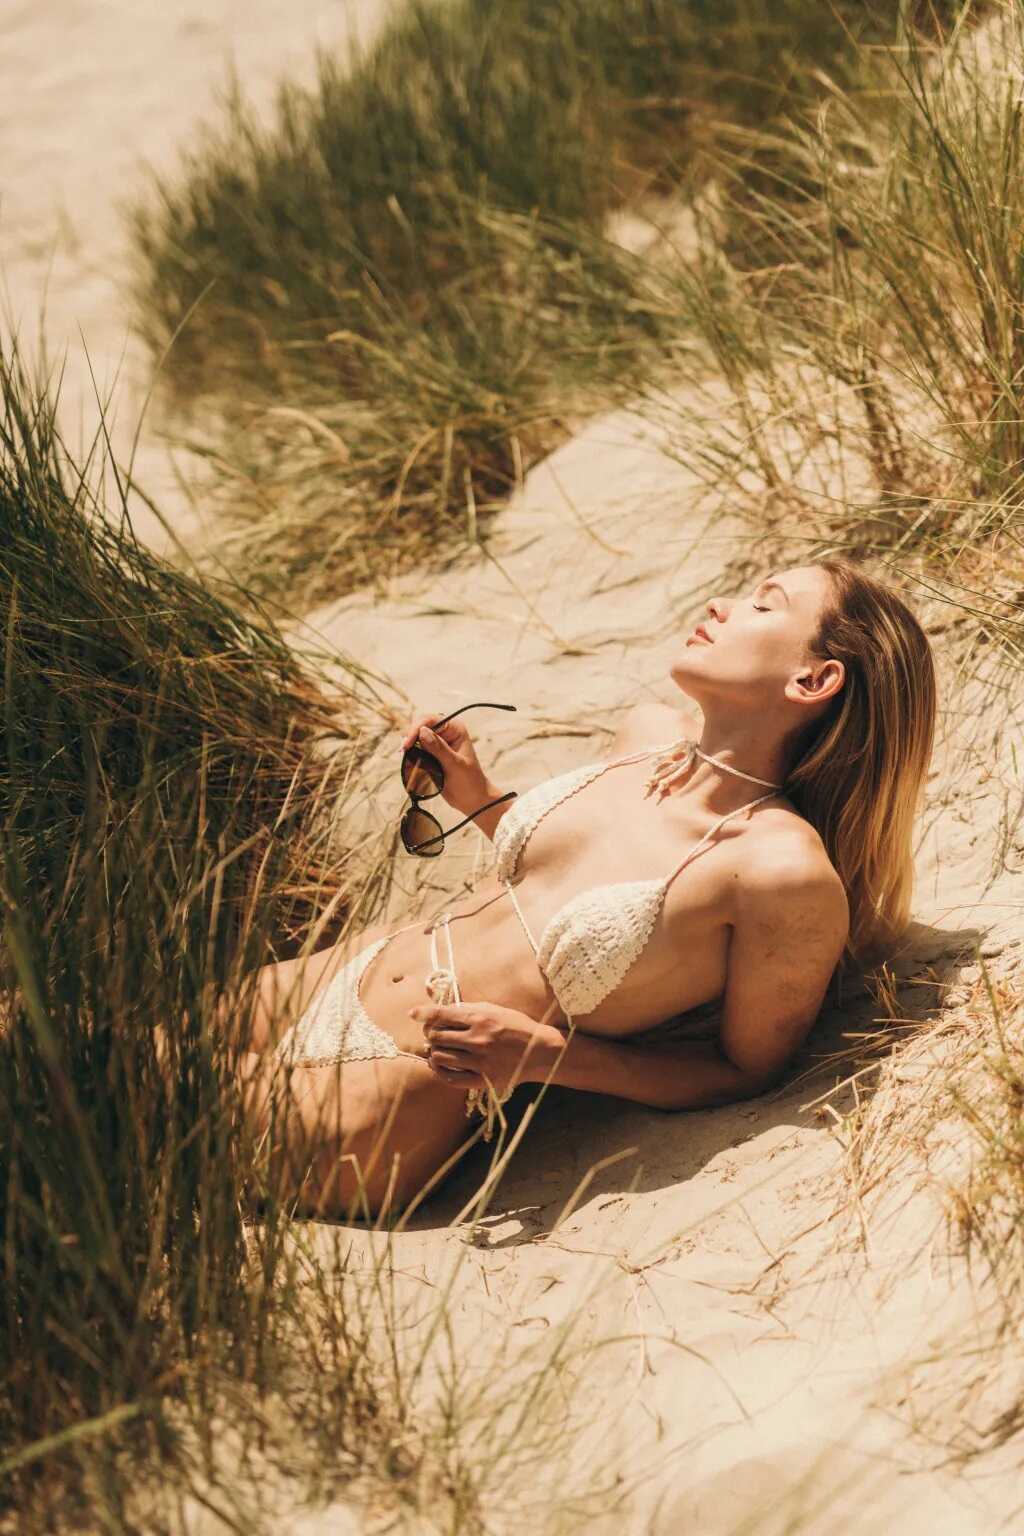 Η μουνάρα μοντέλο Karolina σε topless φωτογραφίες